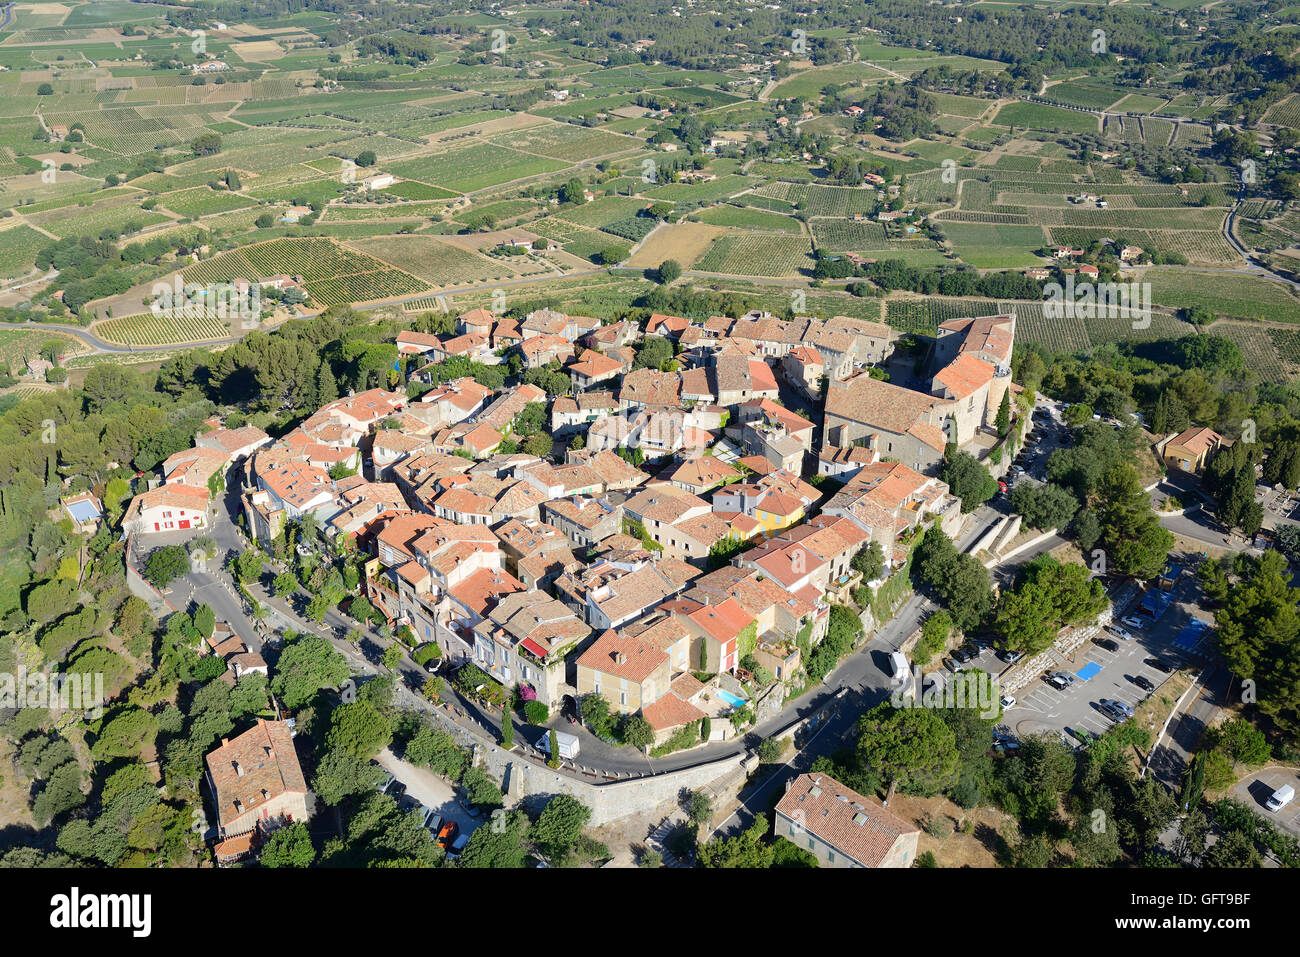 LUFTAUFNAHME. Mittelalterliches Dorf auf einem Hügel mit Blick auf eine Landschaft von Weinreben. Le Castellet, Var, Provence, Frankreich. Stockfoto